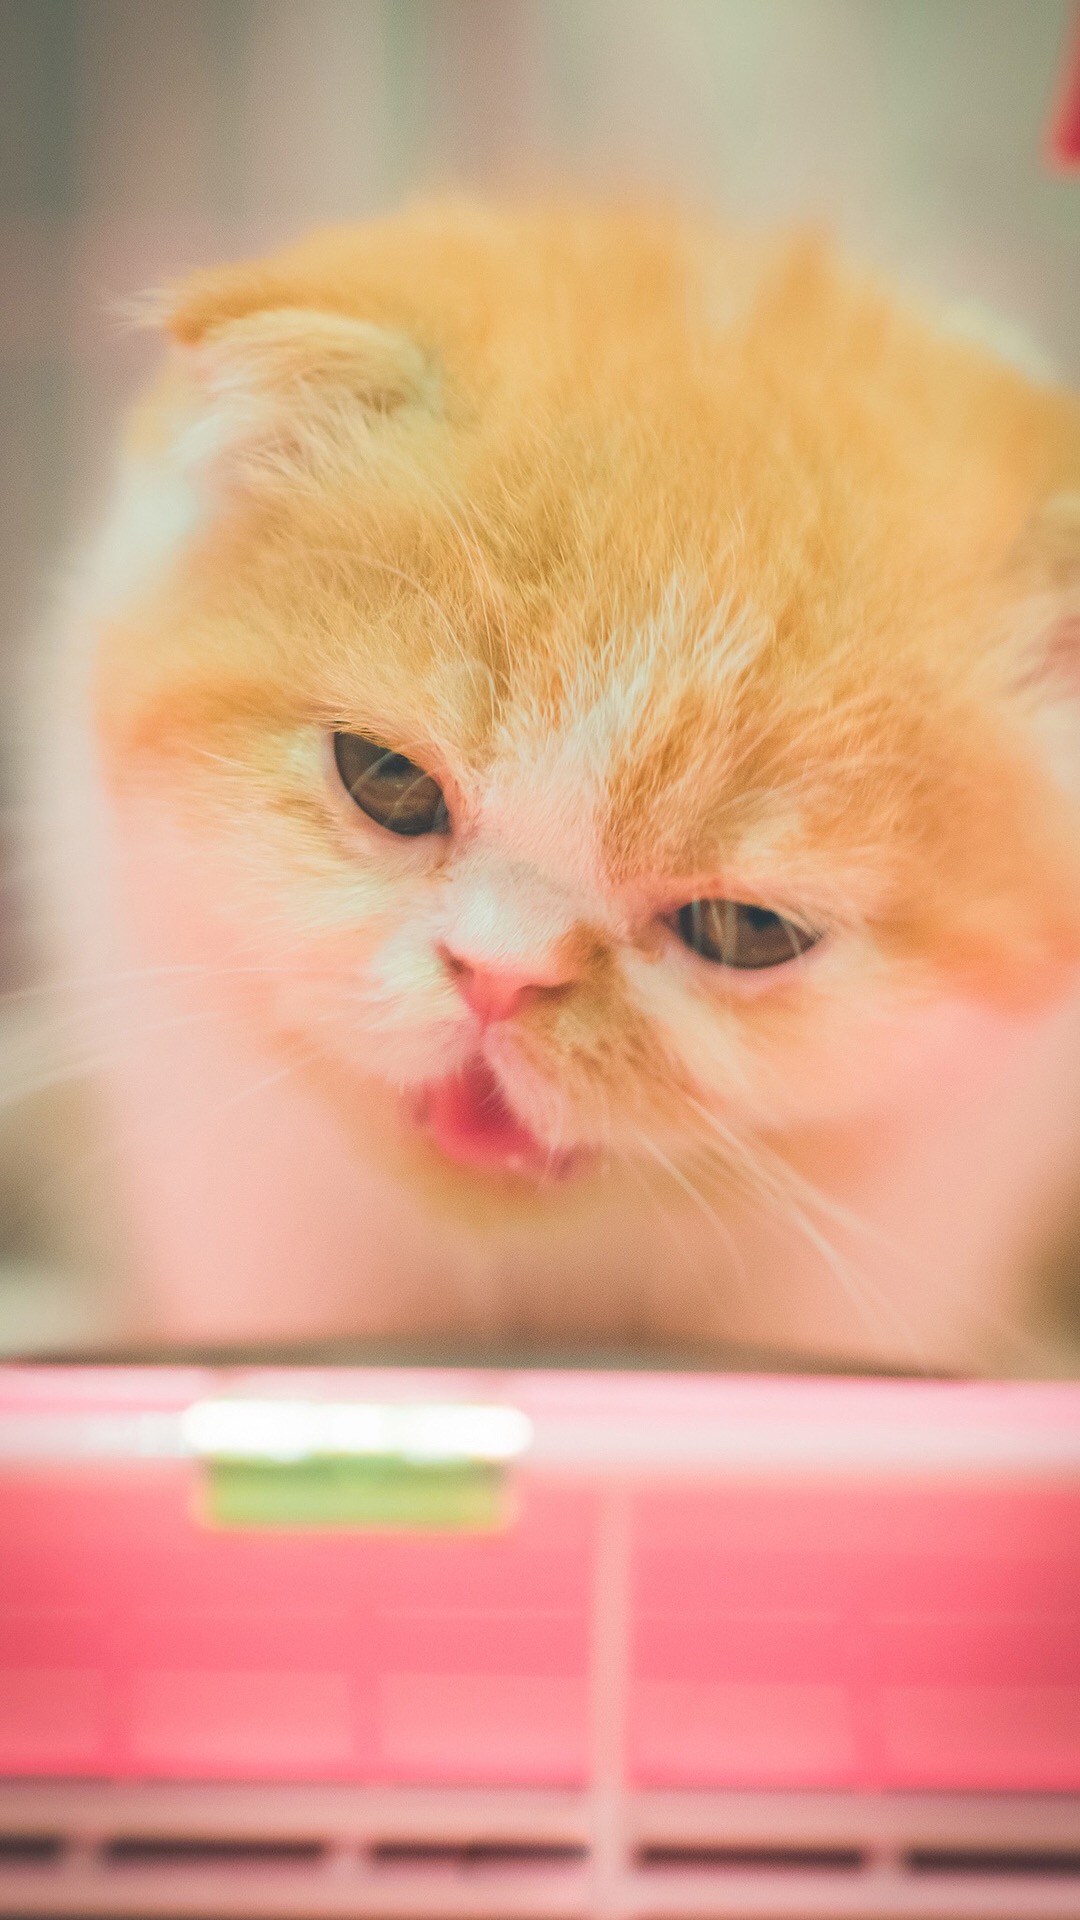 可爱喵星人卖萌图片 可爱的小猫咪高清手机壁纸(6)